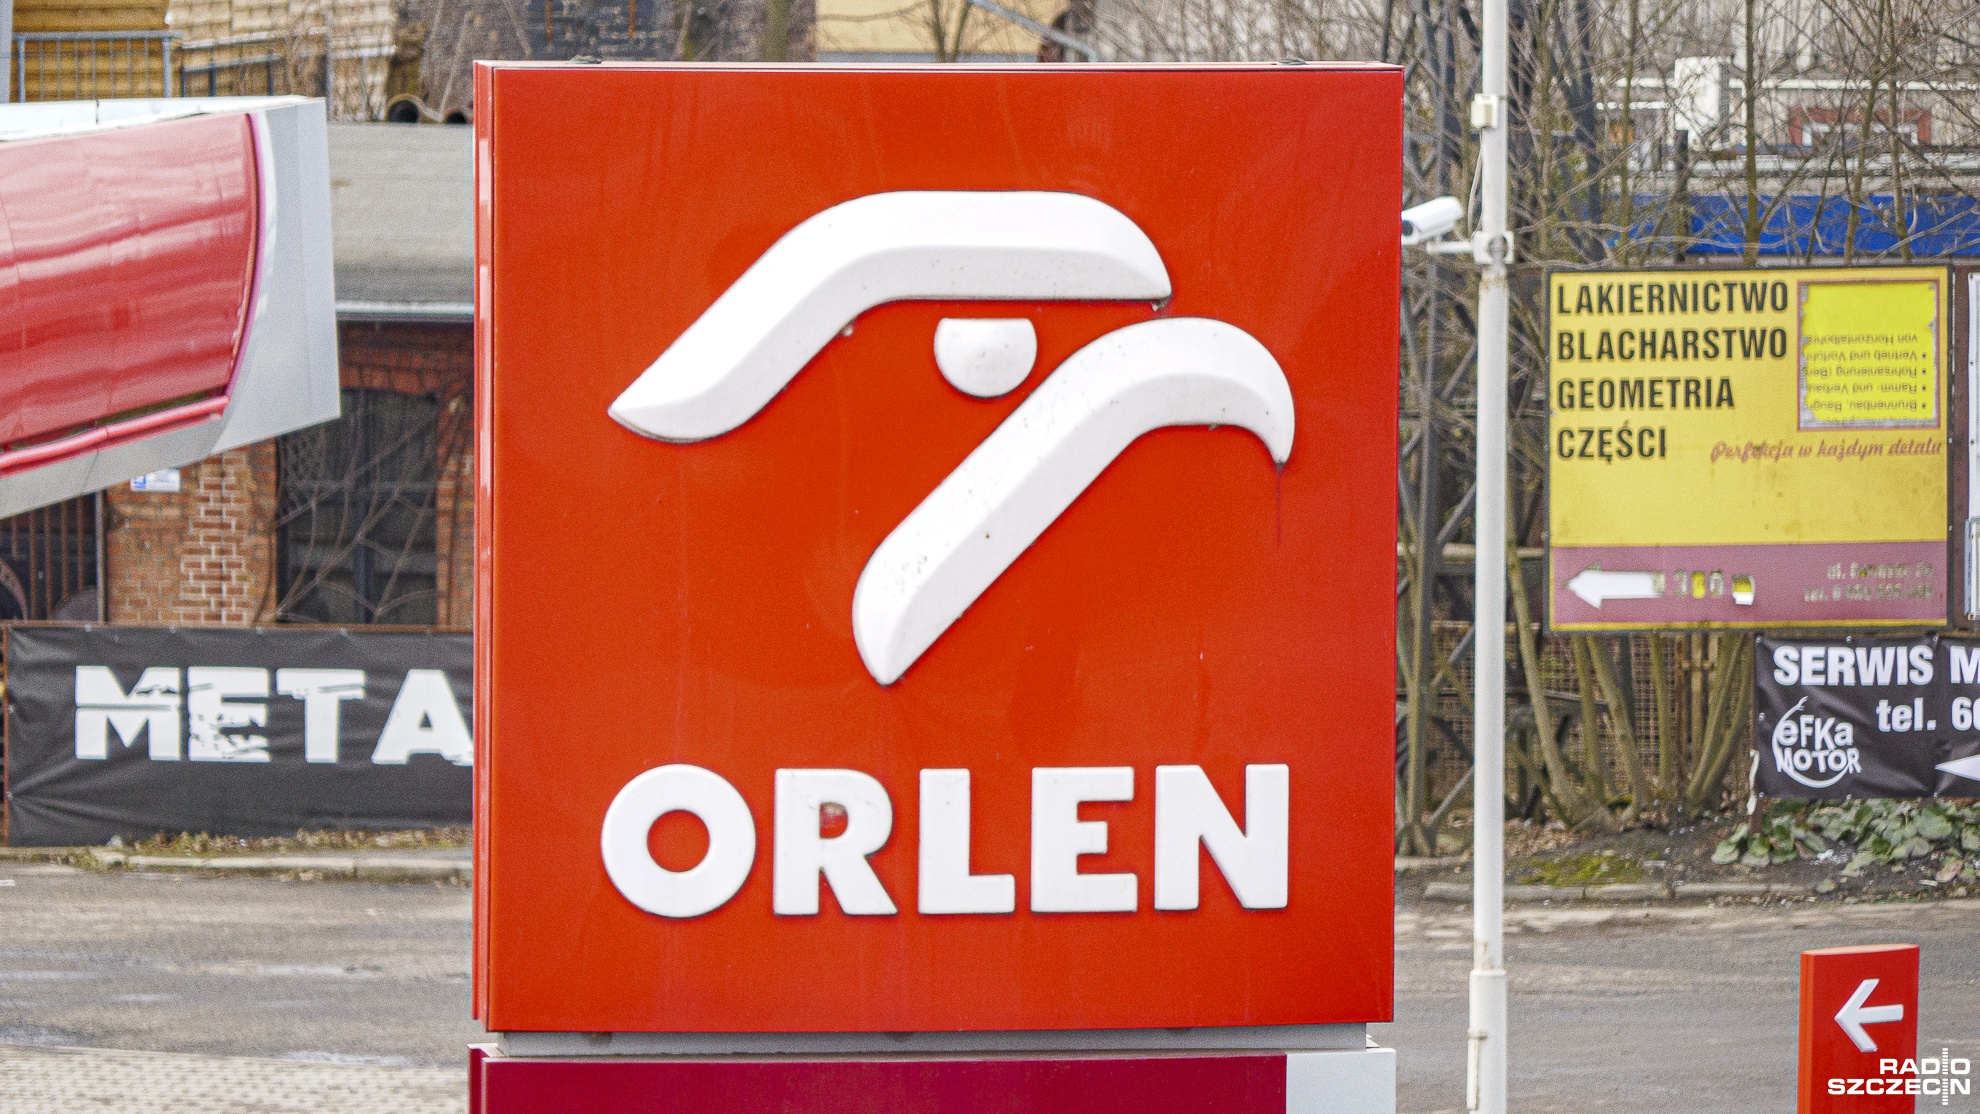 PKN Orlen obniżył cenę litra oleju napędowego o 20 groszy - poinformował na Twitterze prezes koncernu Daniel Obajtek.